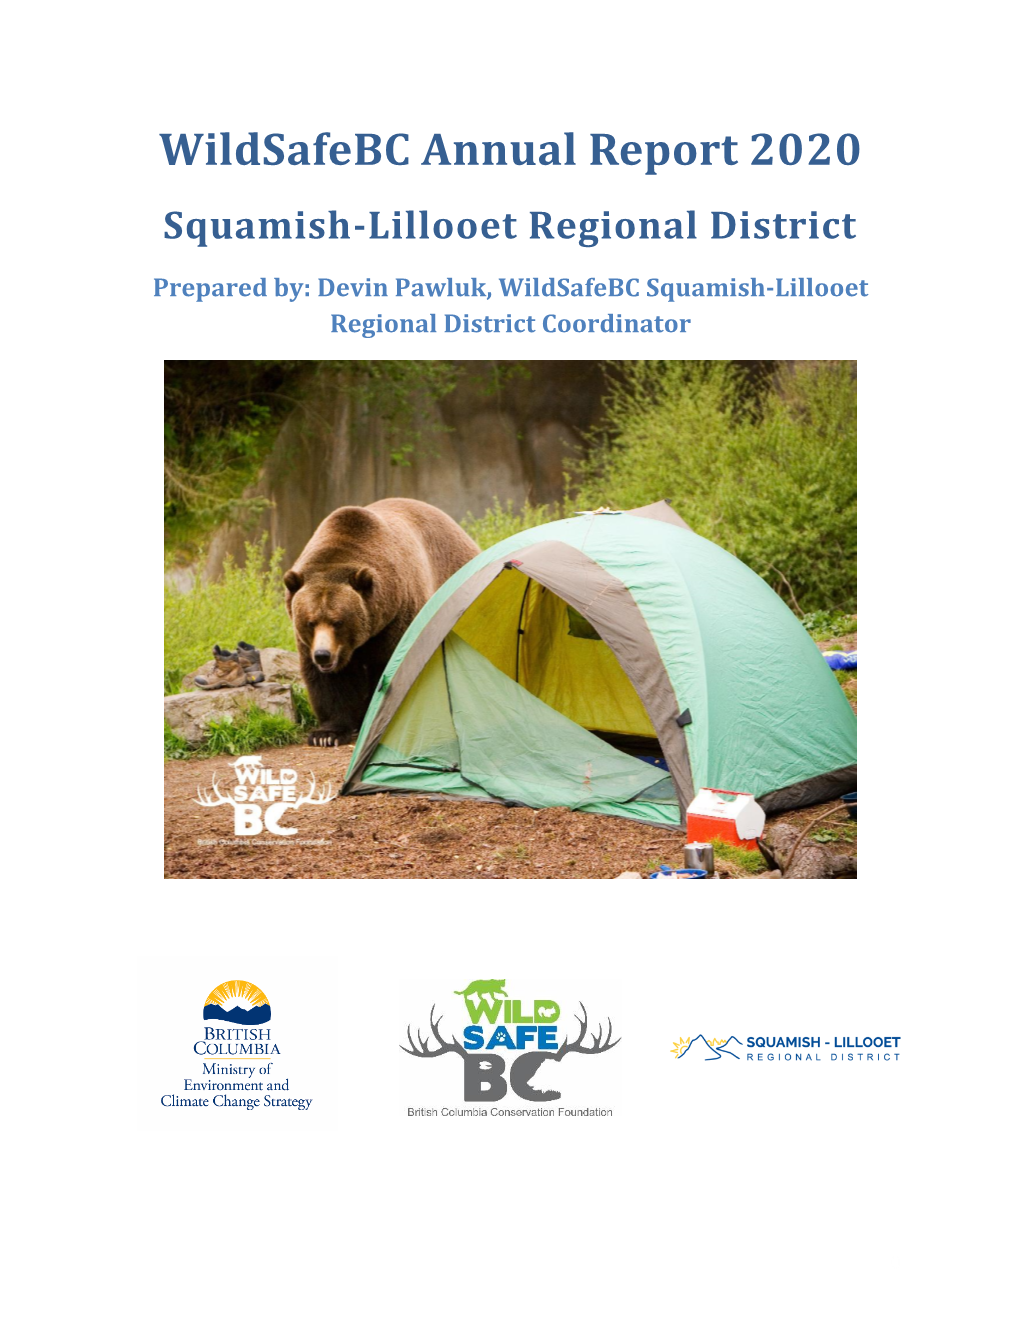 Wildsafebc Squamish-Lillooet Regional District Annual Report